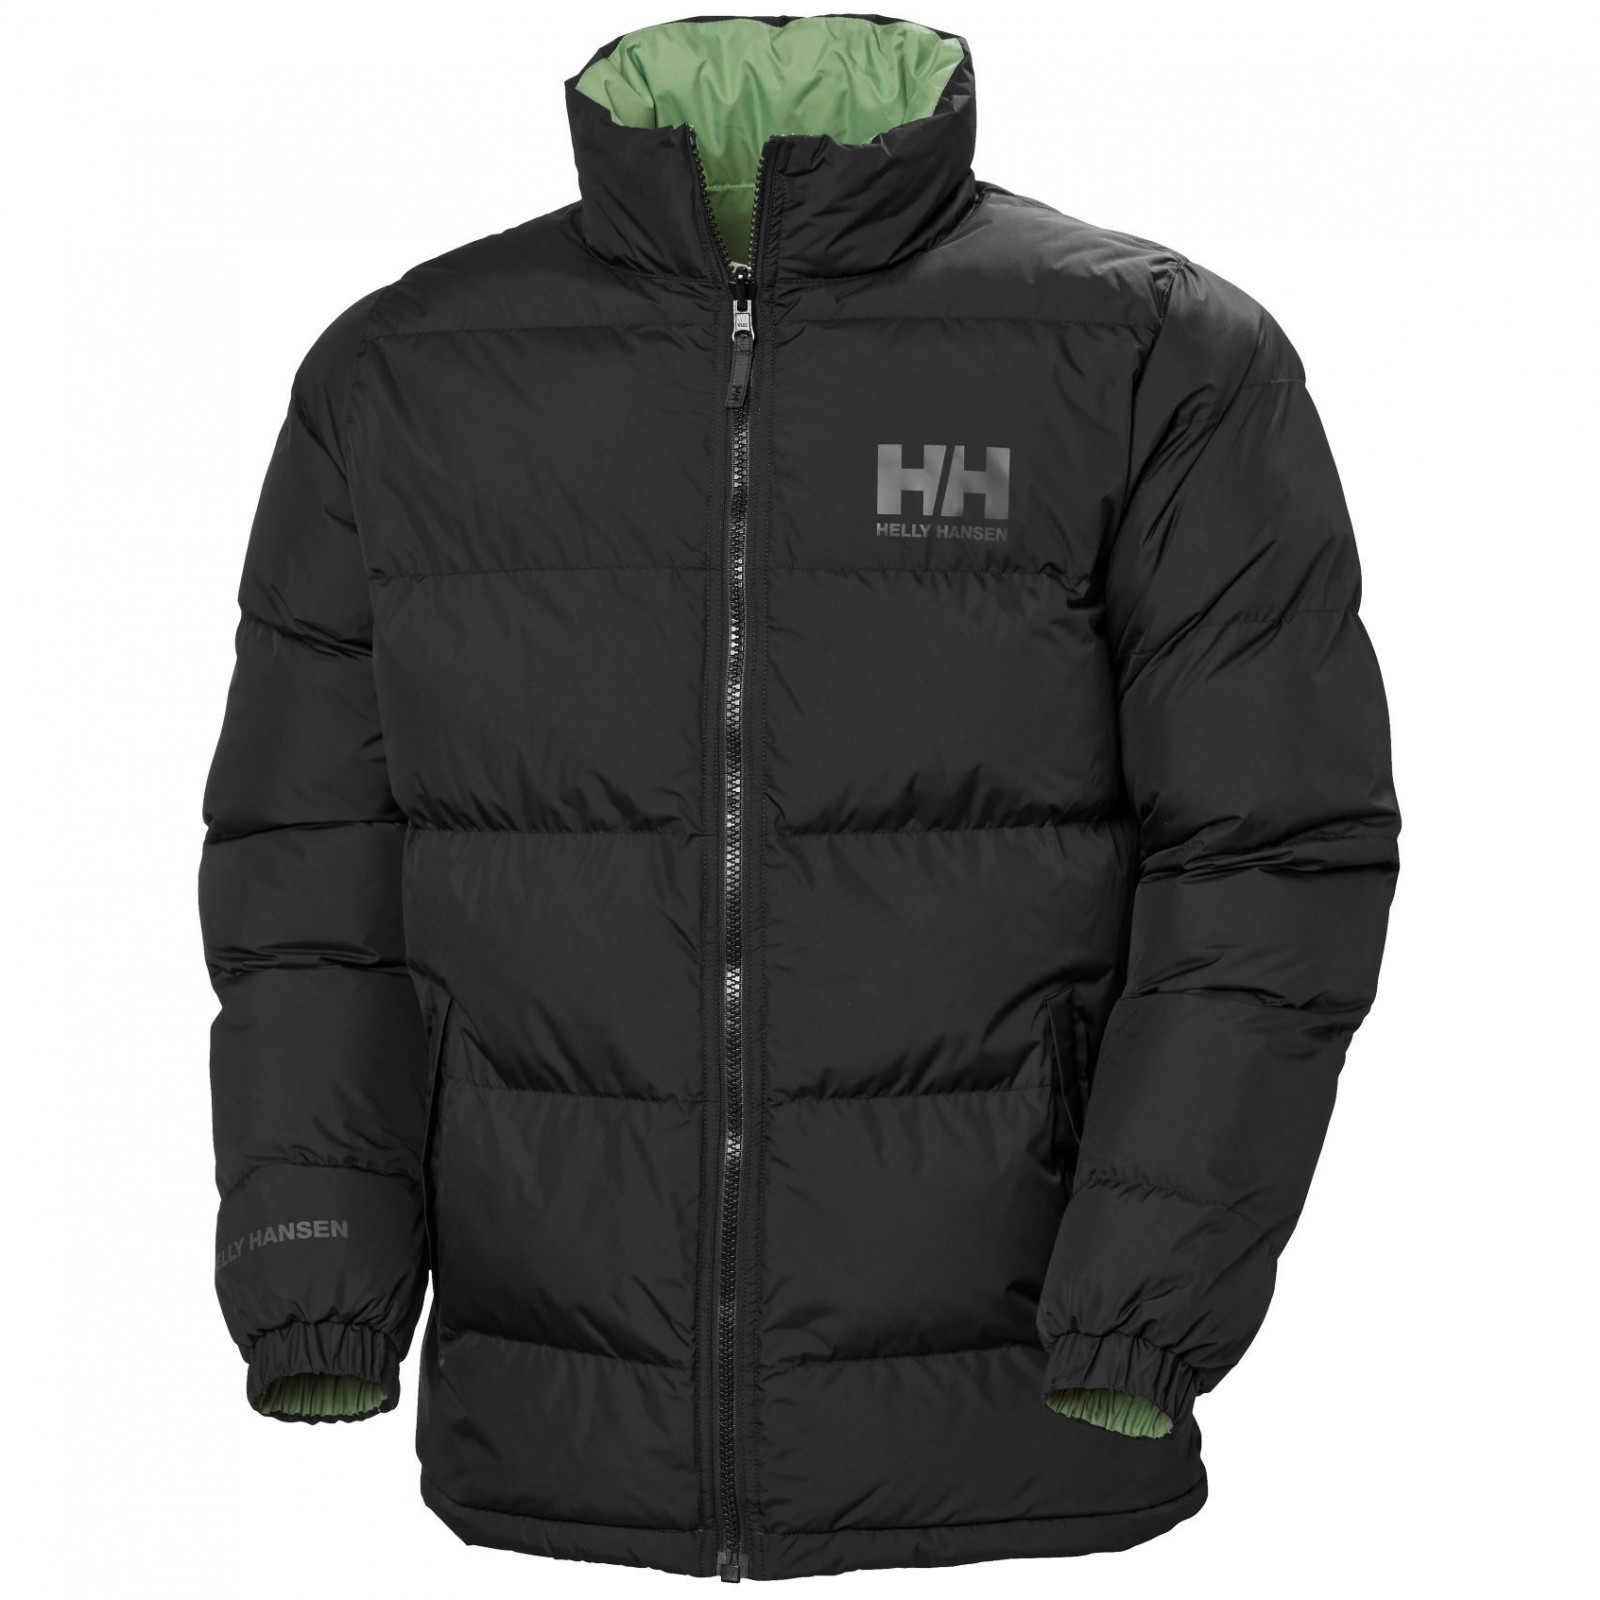 Pánská bunda Helly Hansen Hh Urban Reversible Jacket Velikost: M / Barva: černá/zelená